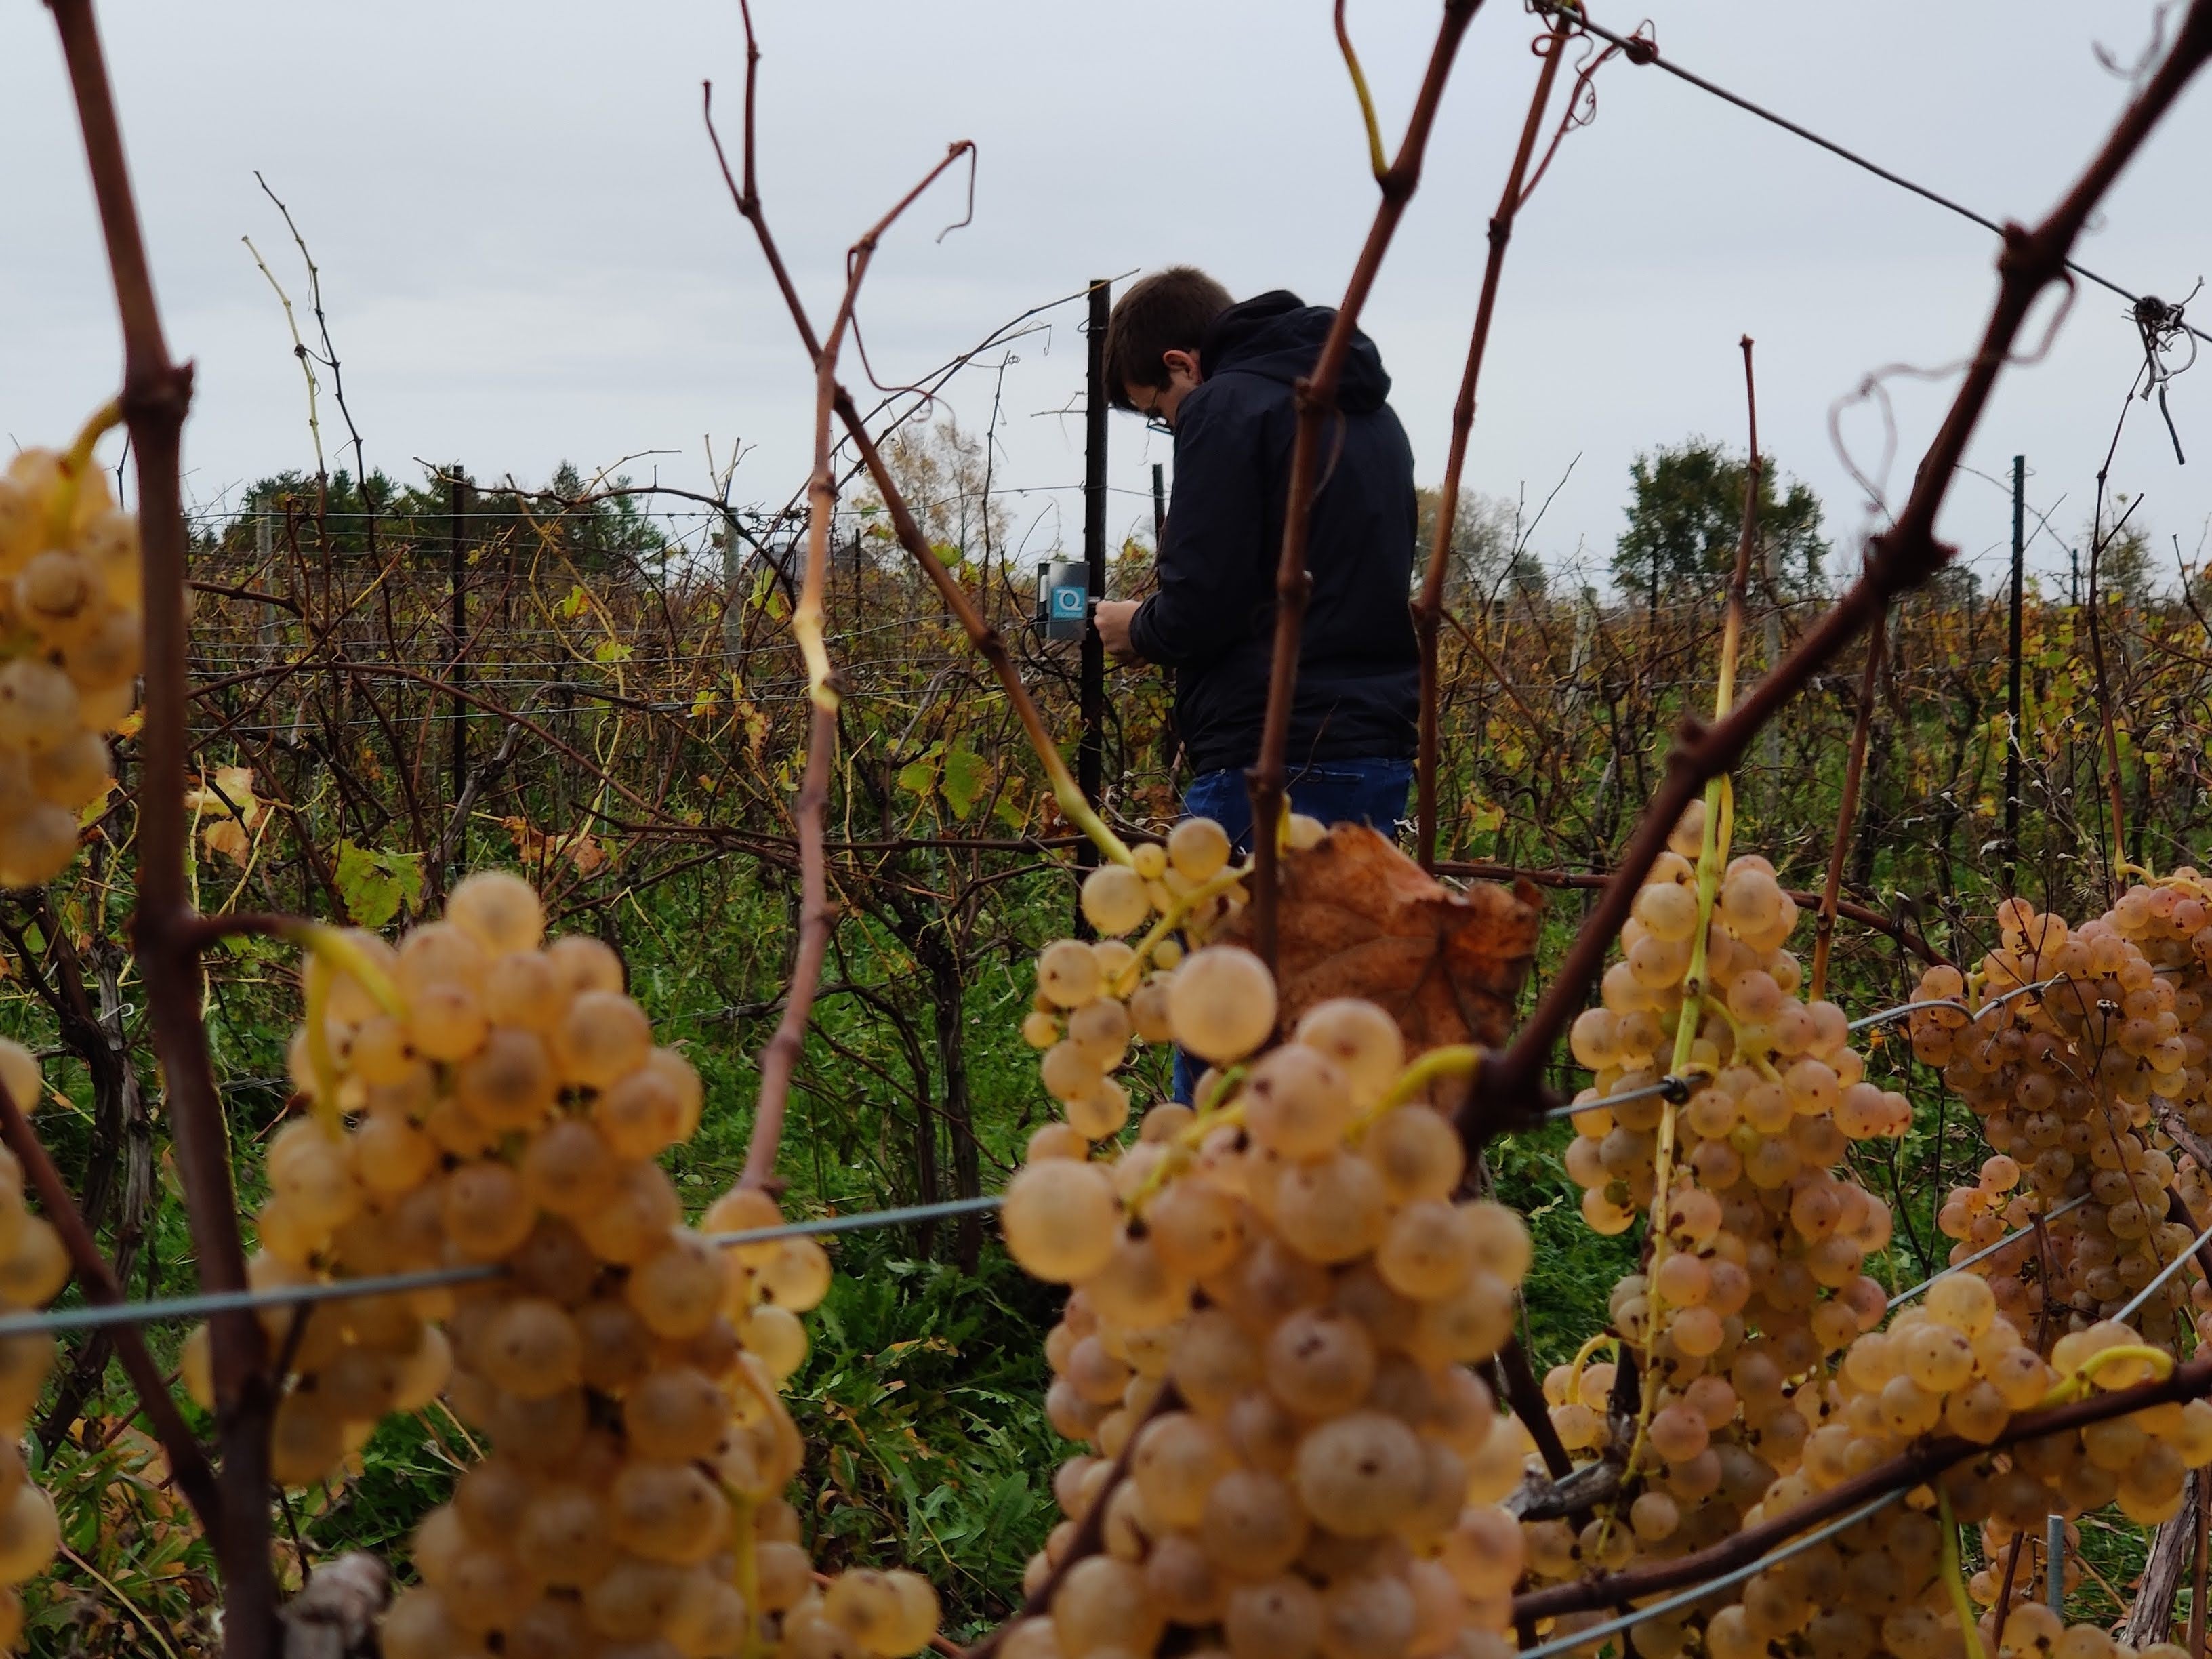 Jack working in the vineyard